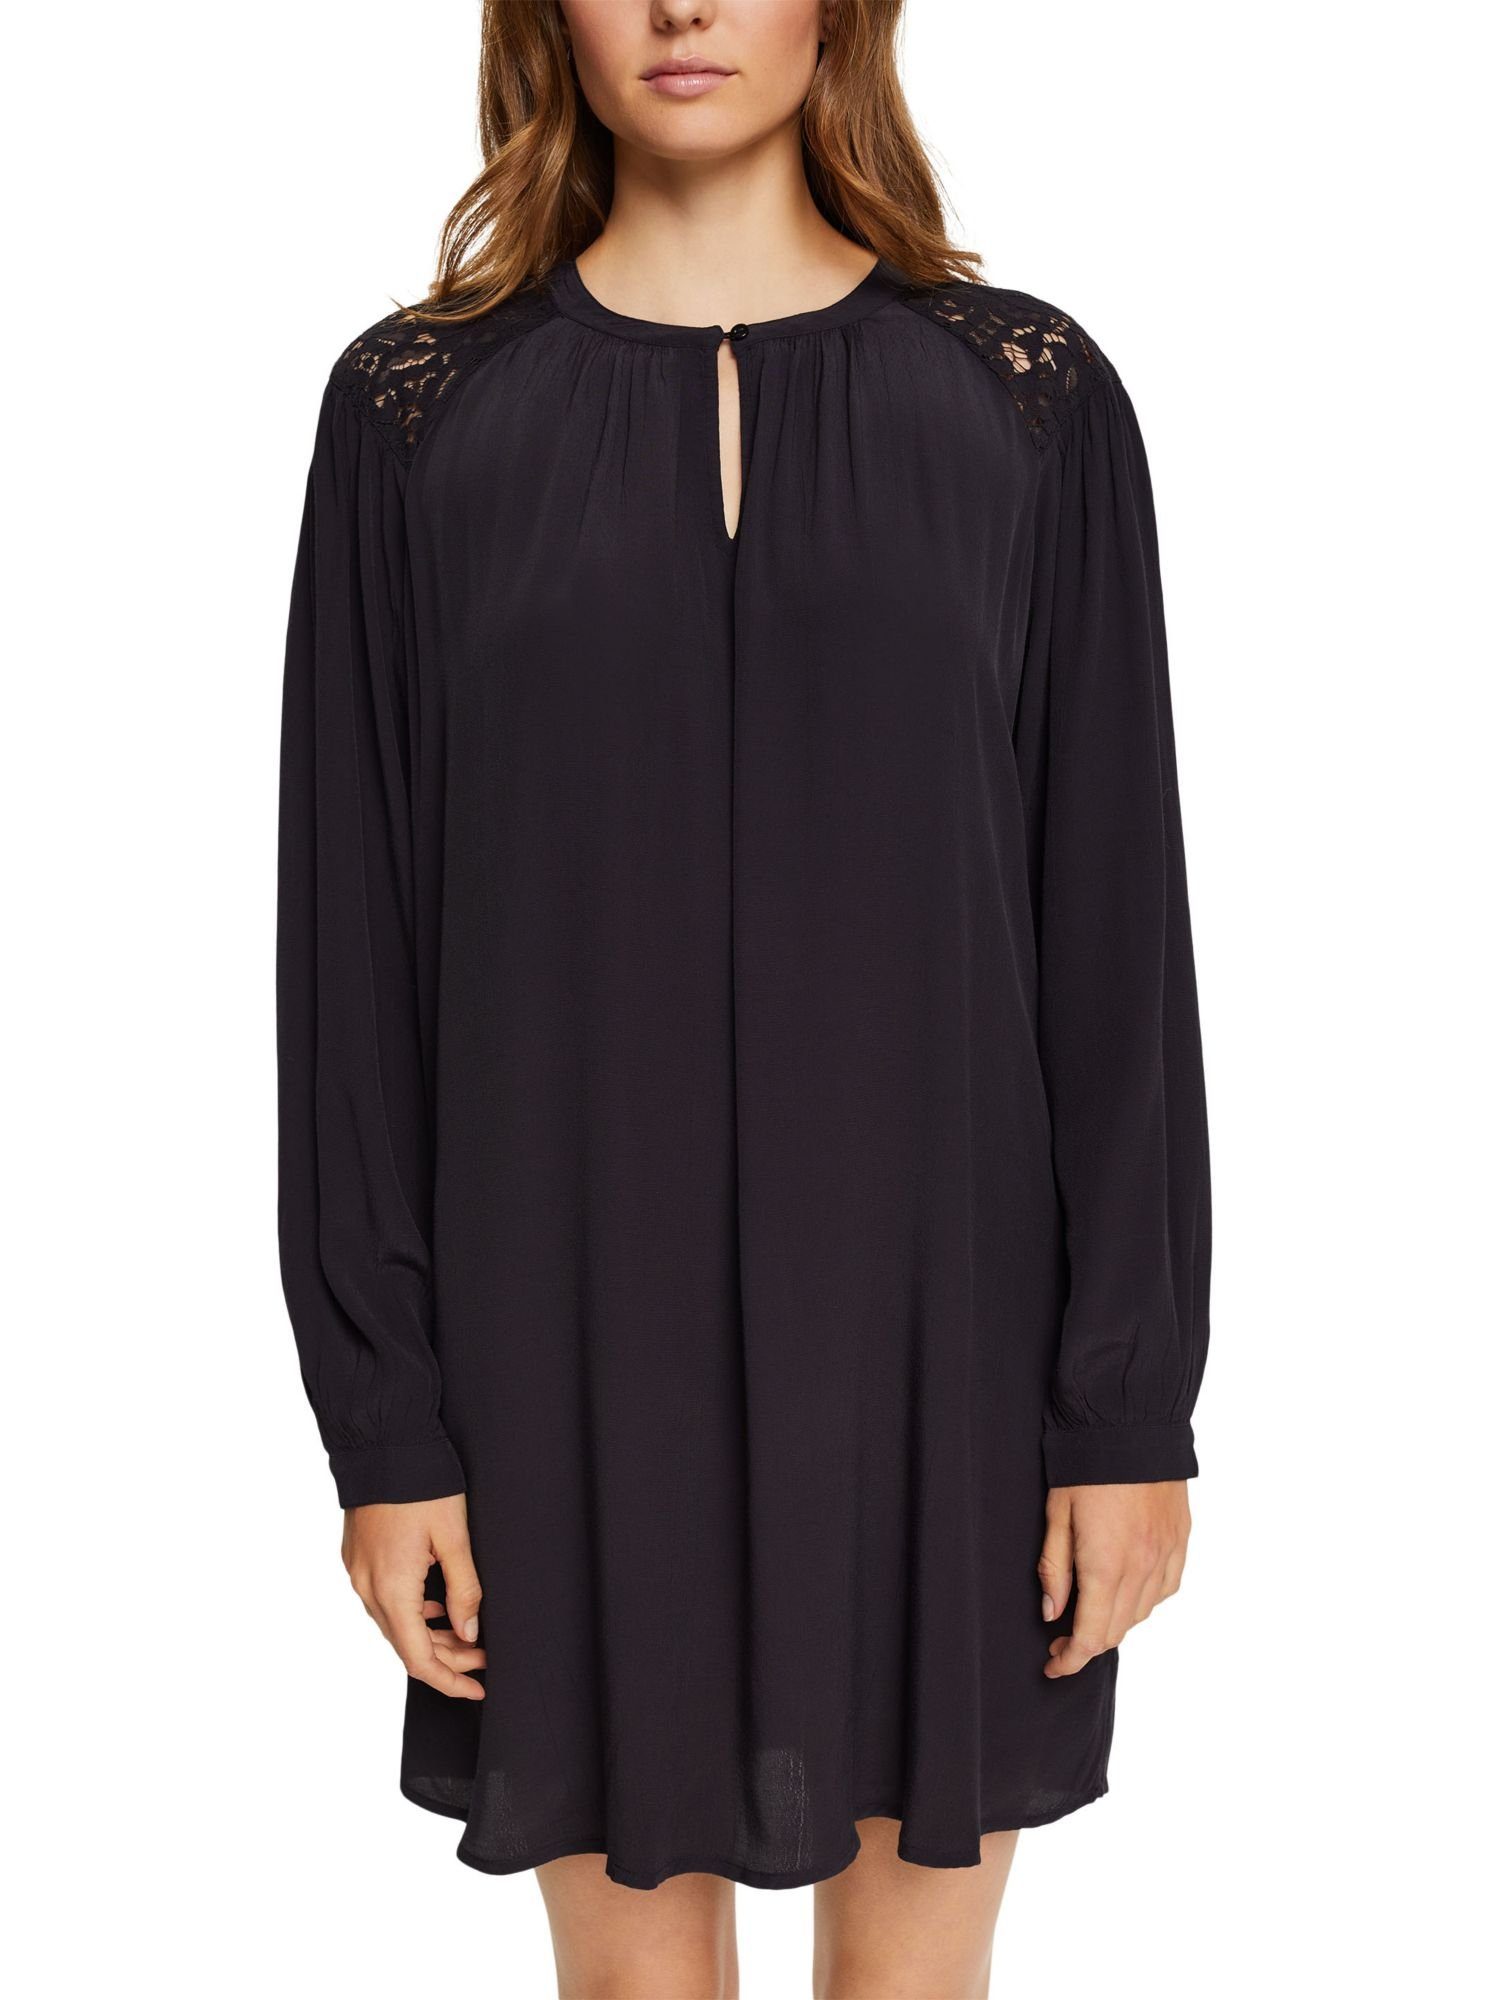 edc by Esprit Spitzendetails Minikleid mit BLACK Kleid